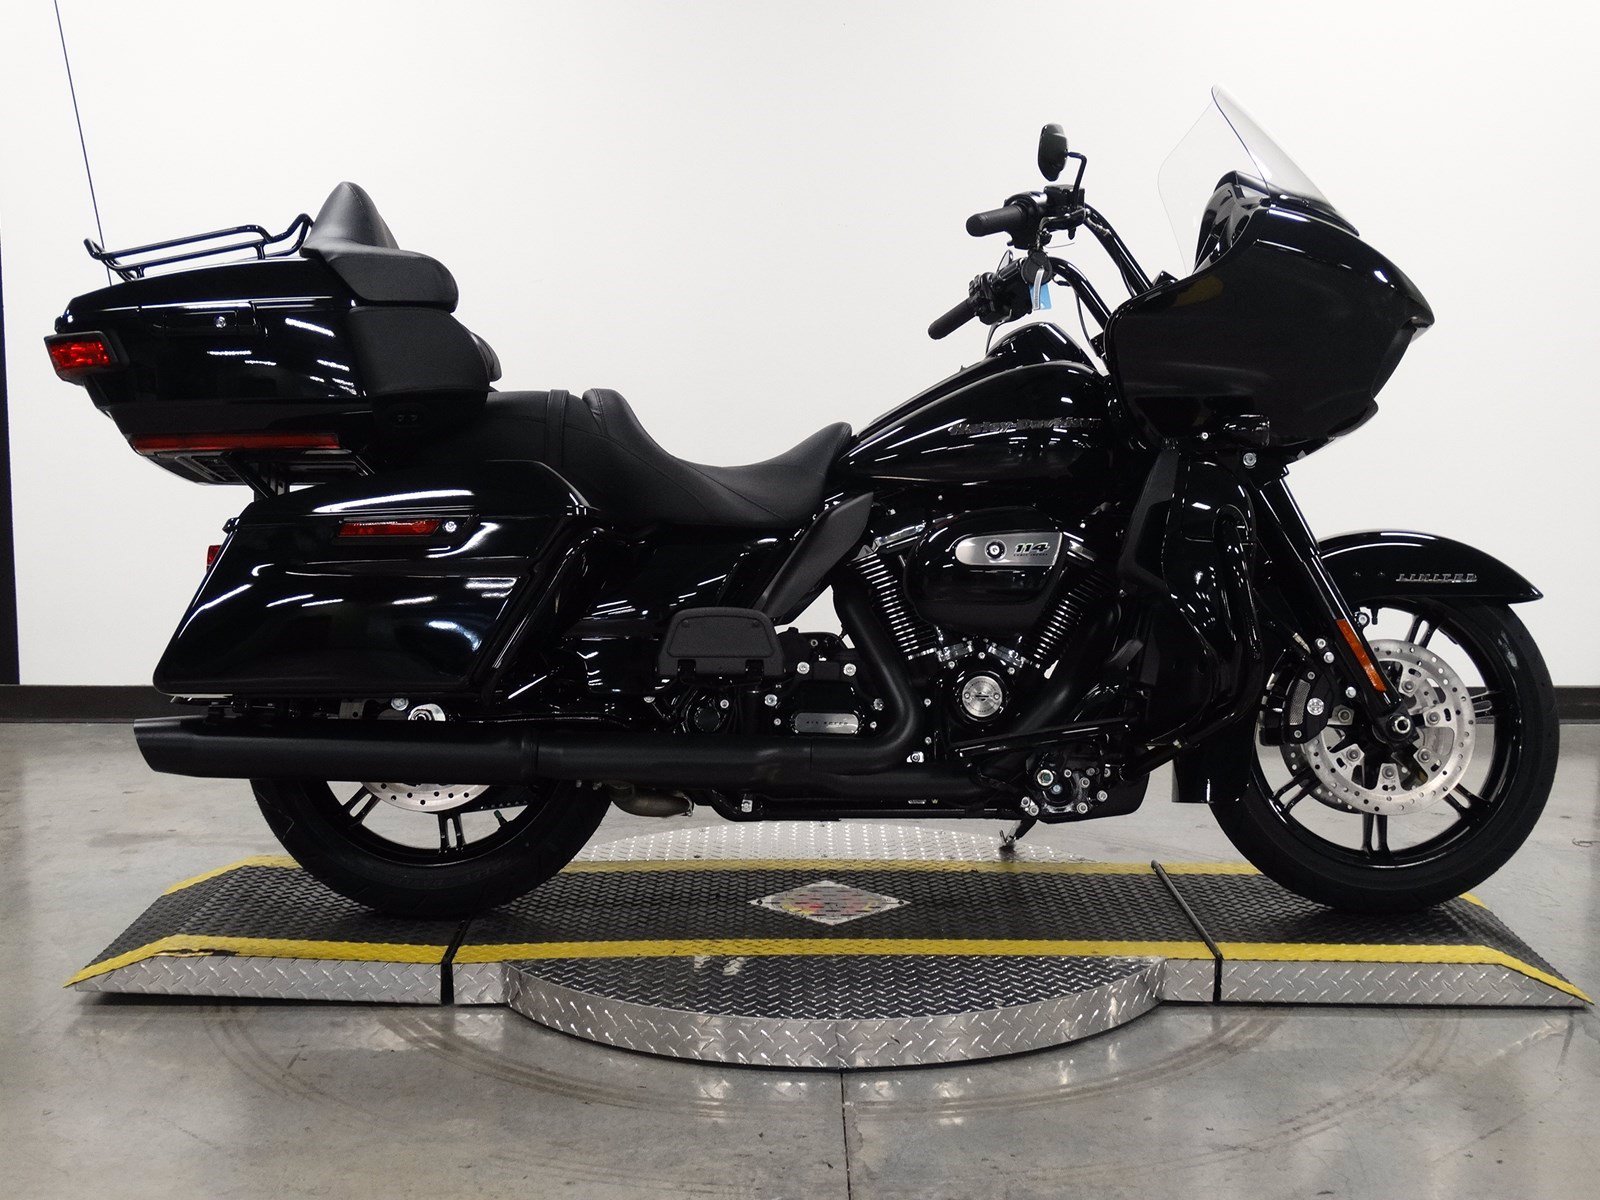 New 2020 Harley-Davidson Road Glide Limited Black FLTRK Touring in